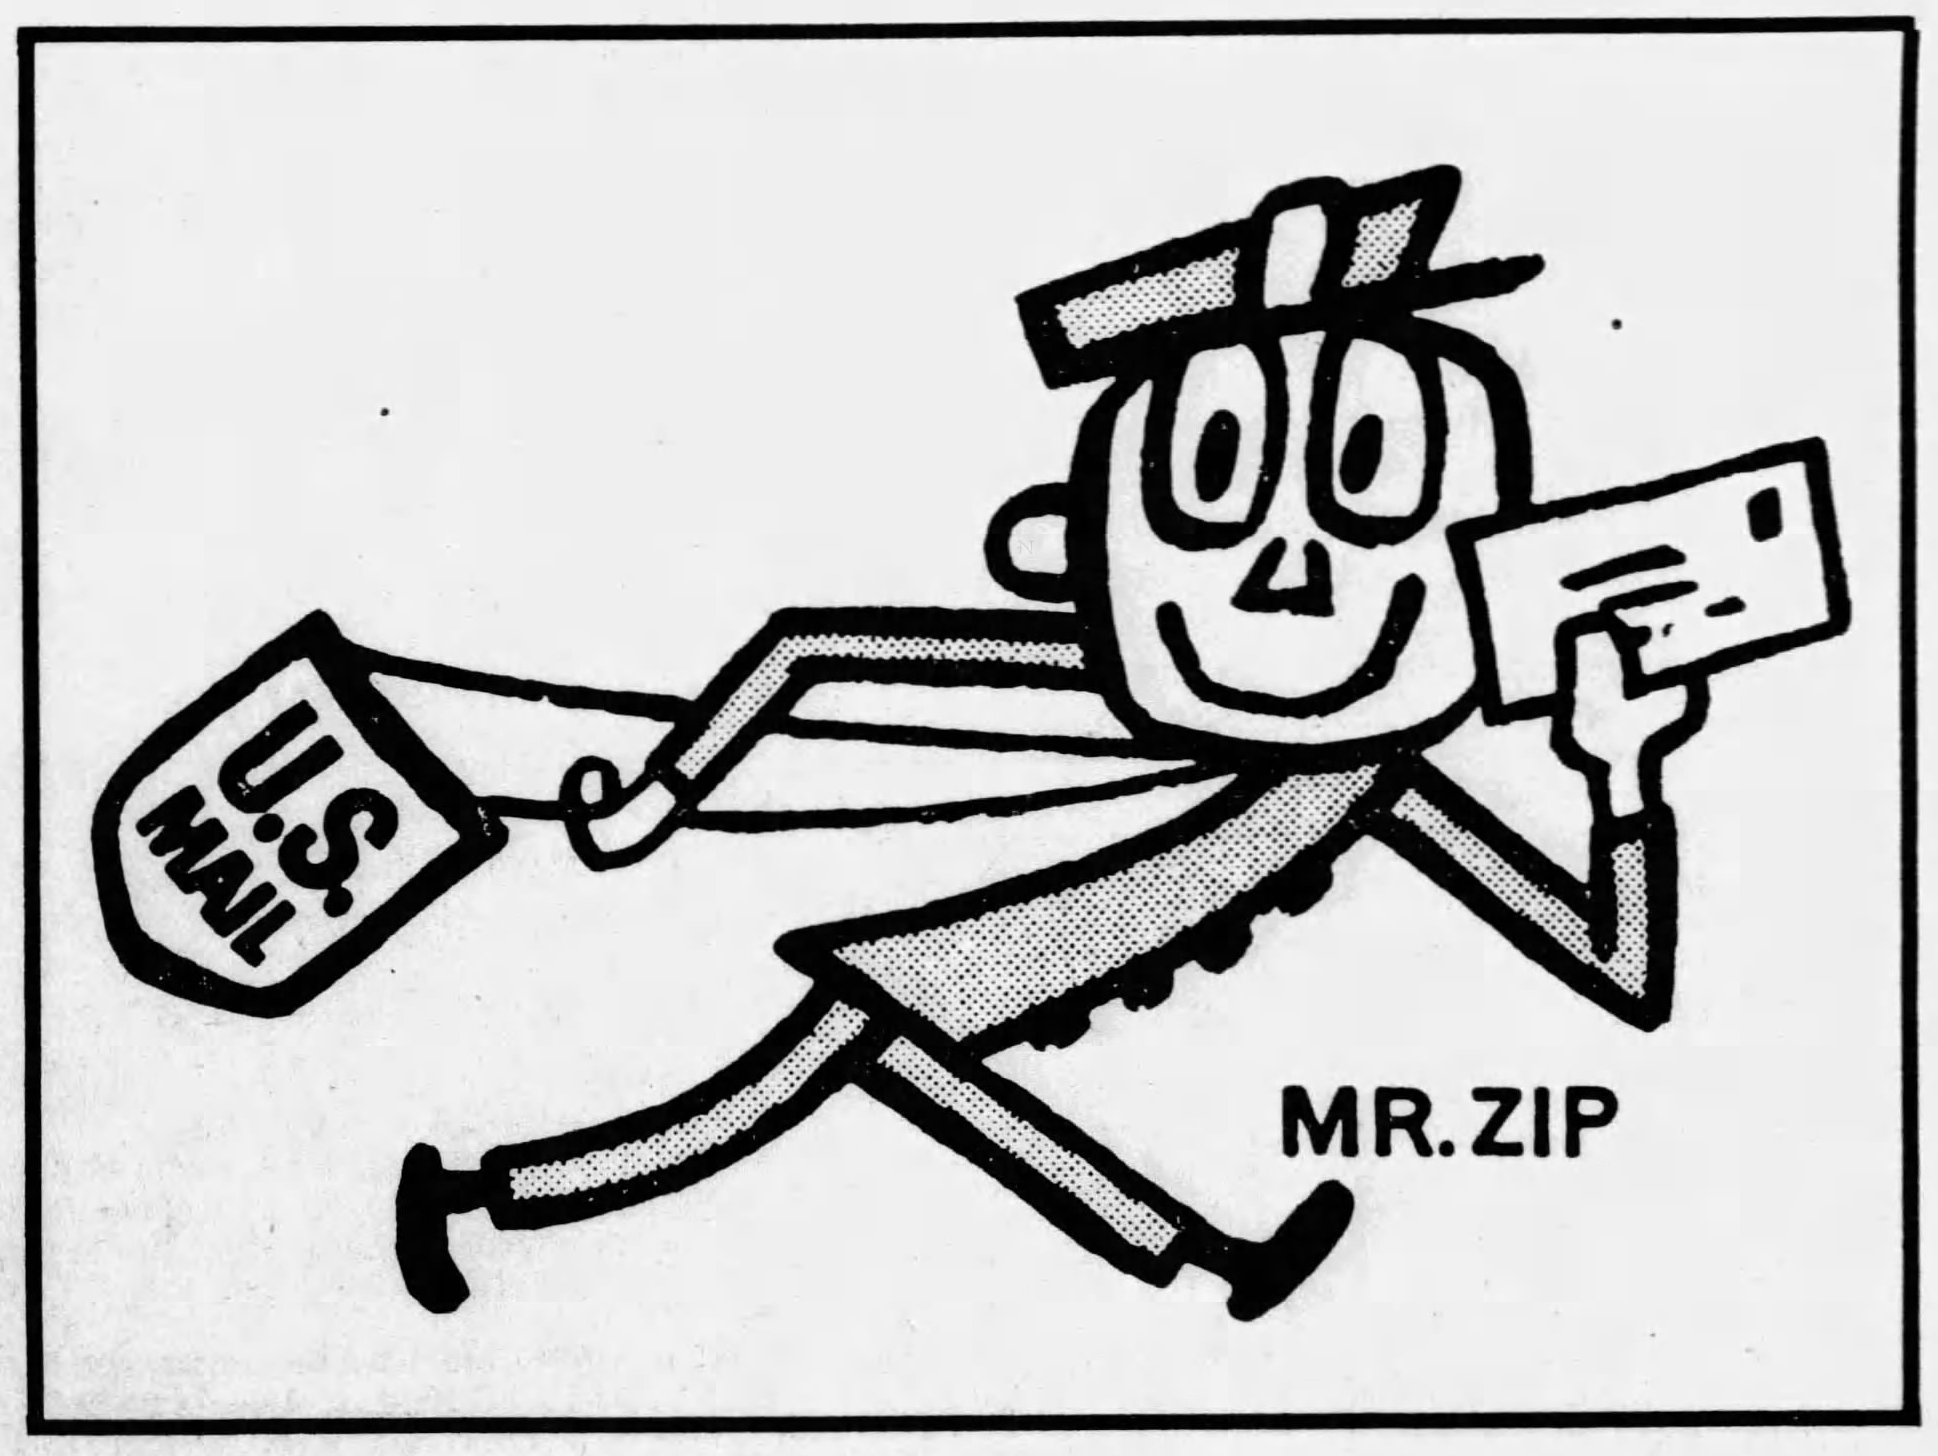 Mr. ZIP